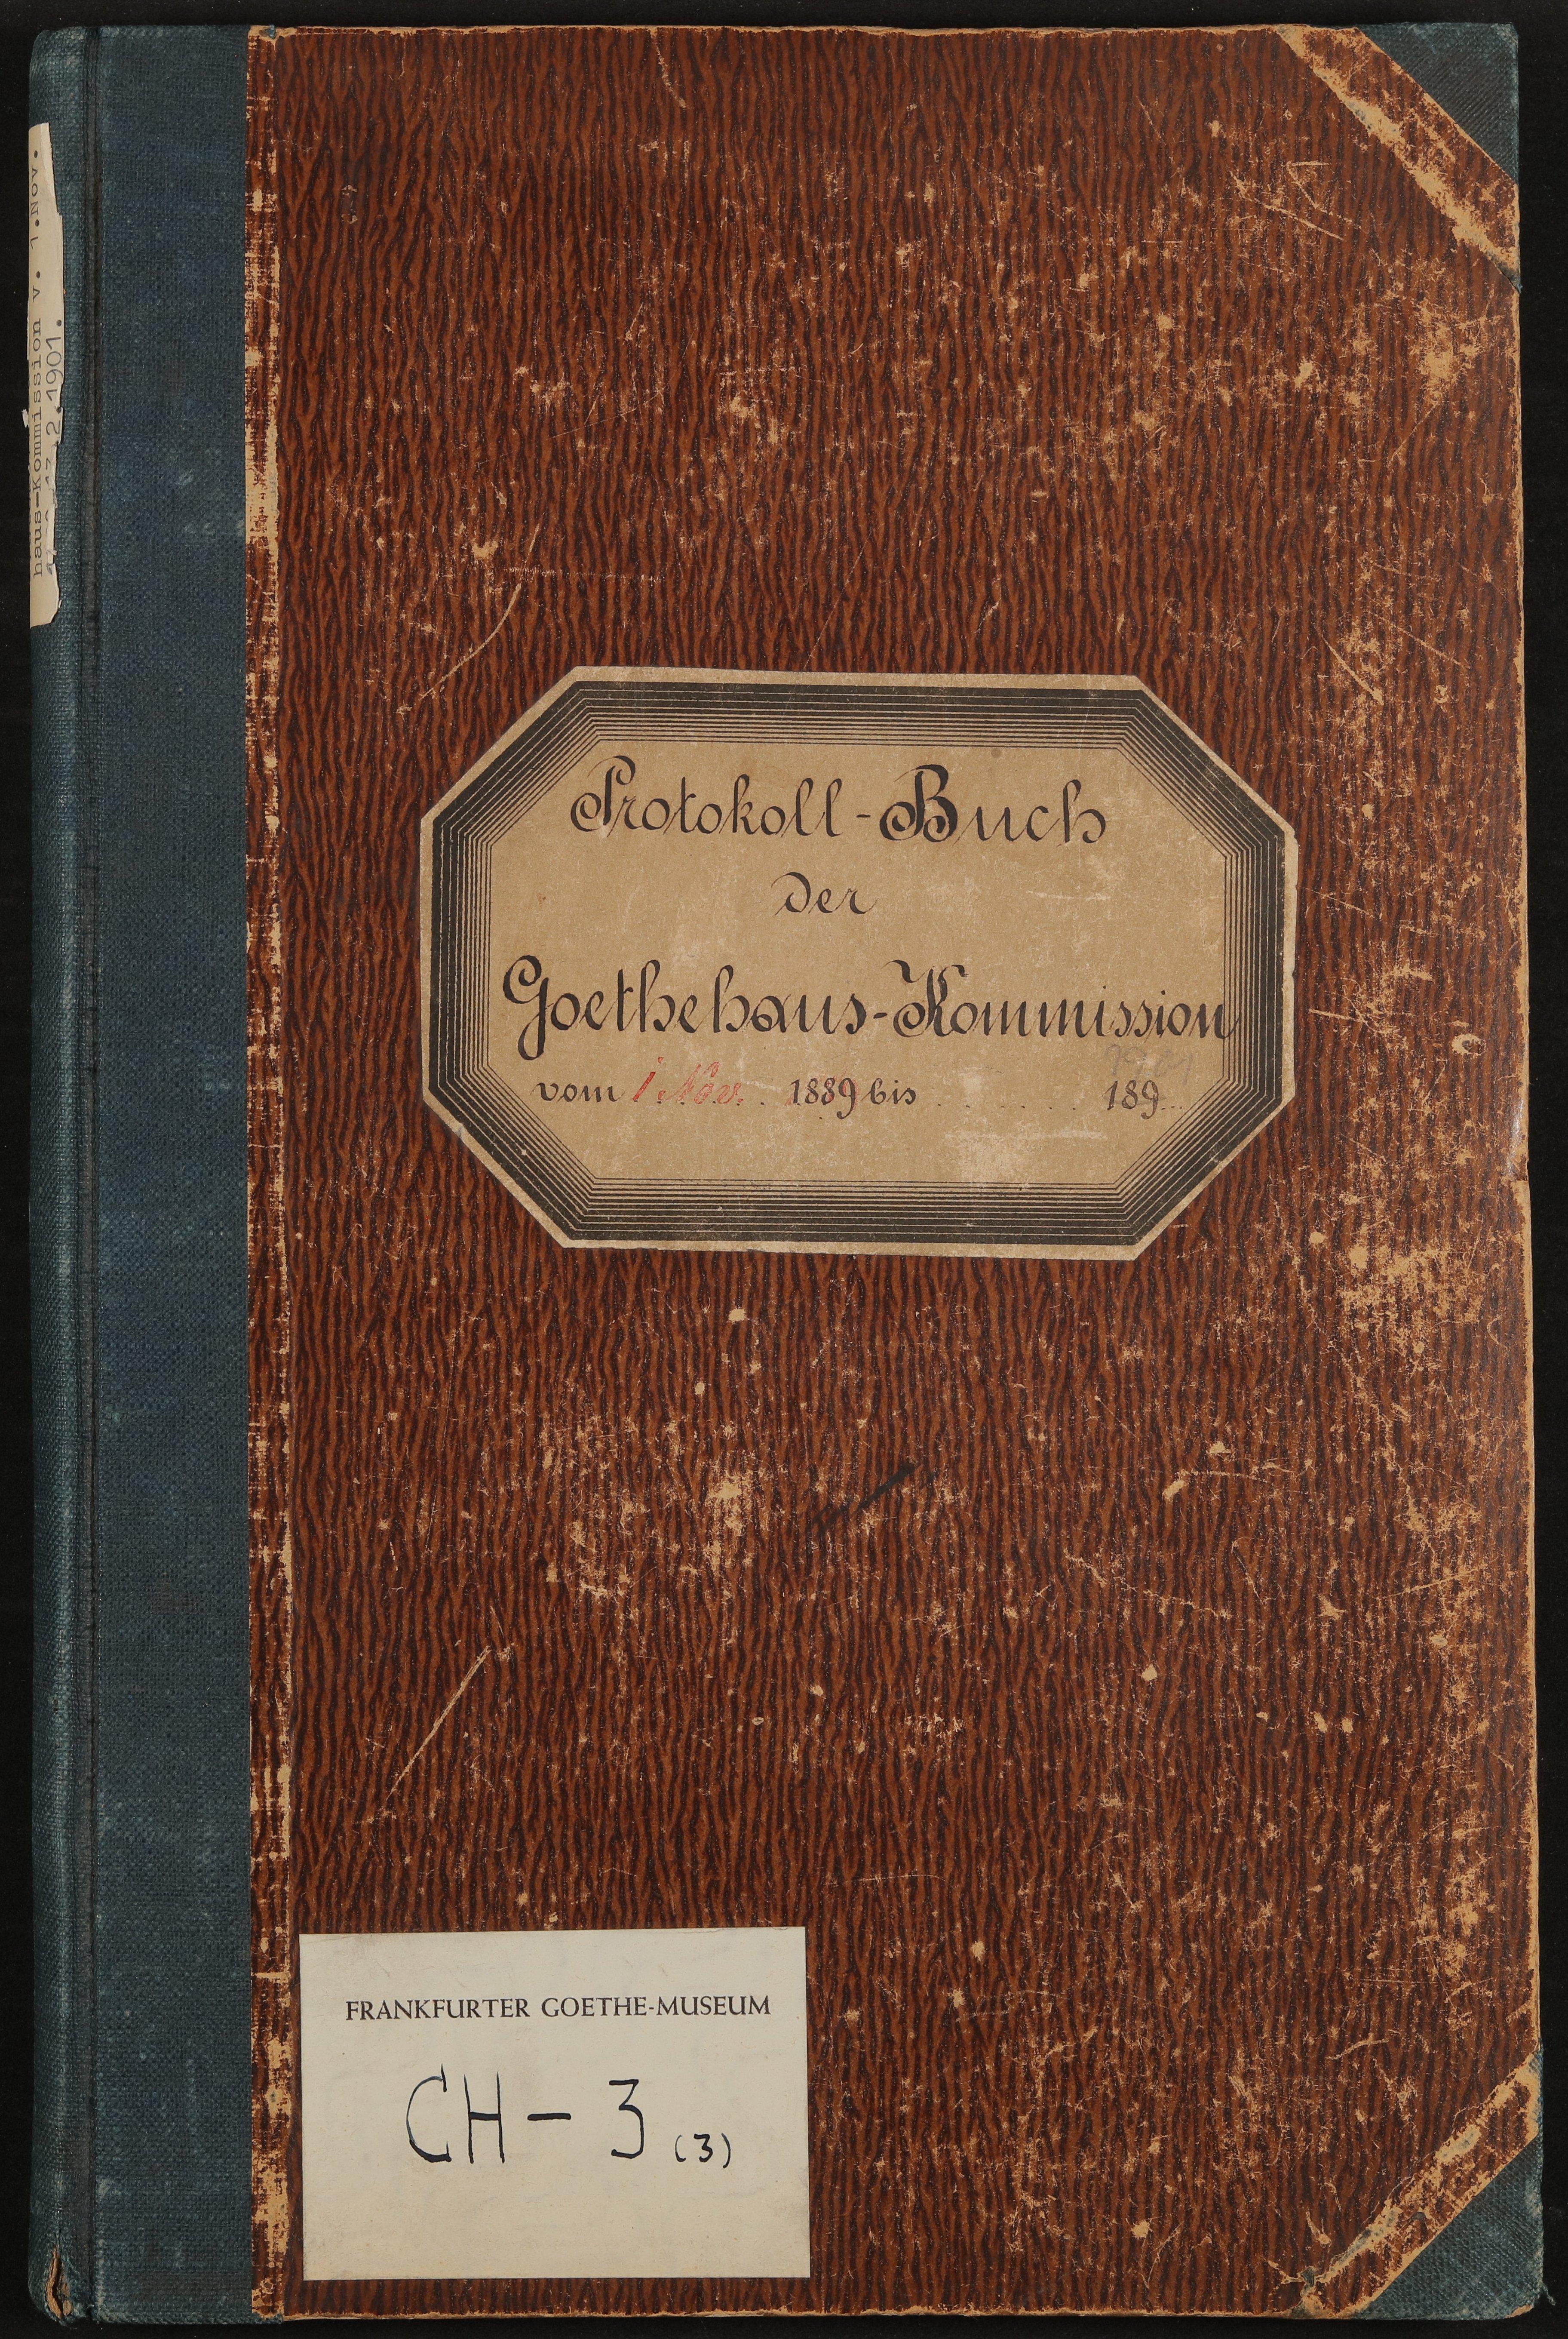 Protokoll-Buch der Goethehaus-Kommission 1889-1901 (Freies Deutsches Hochstift / Frankfurter Goethe-Museum Public Domain Mark)